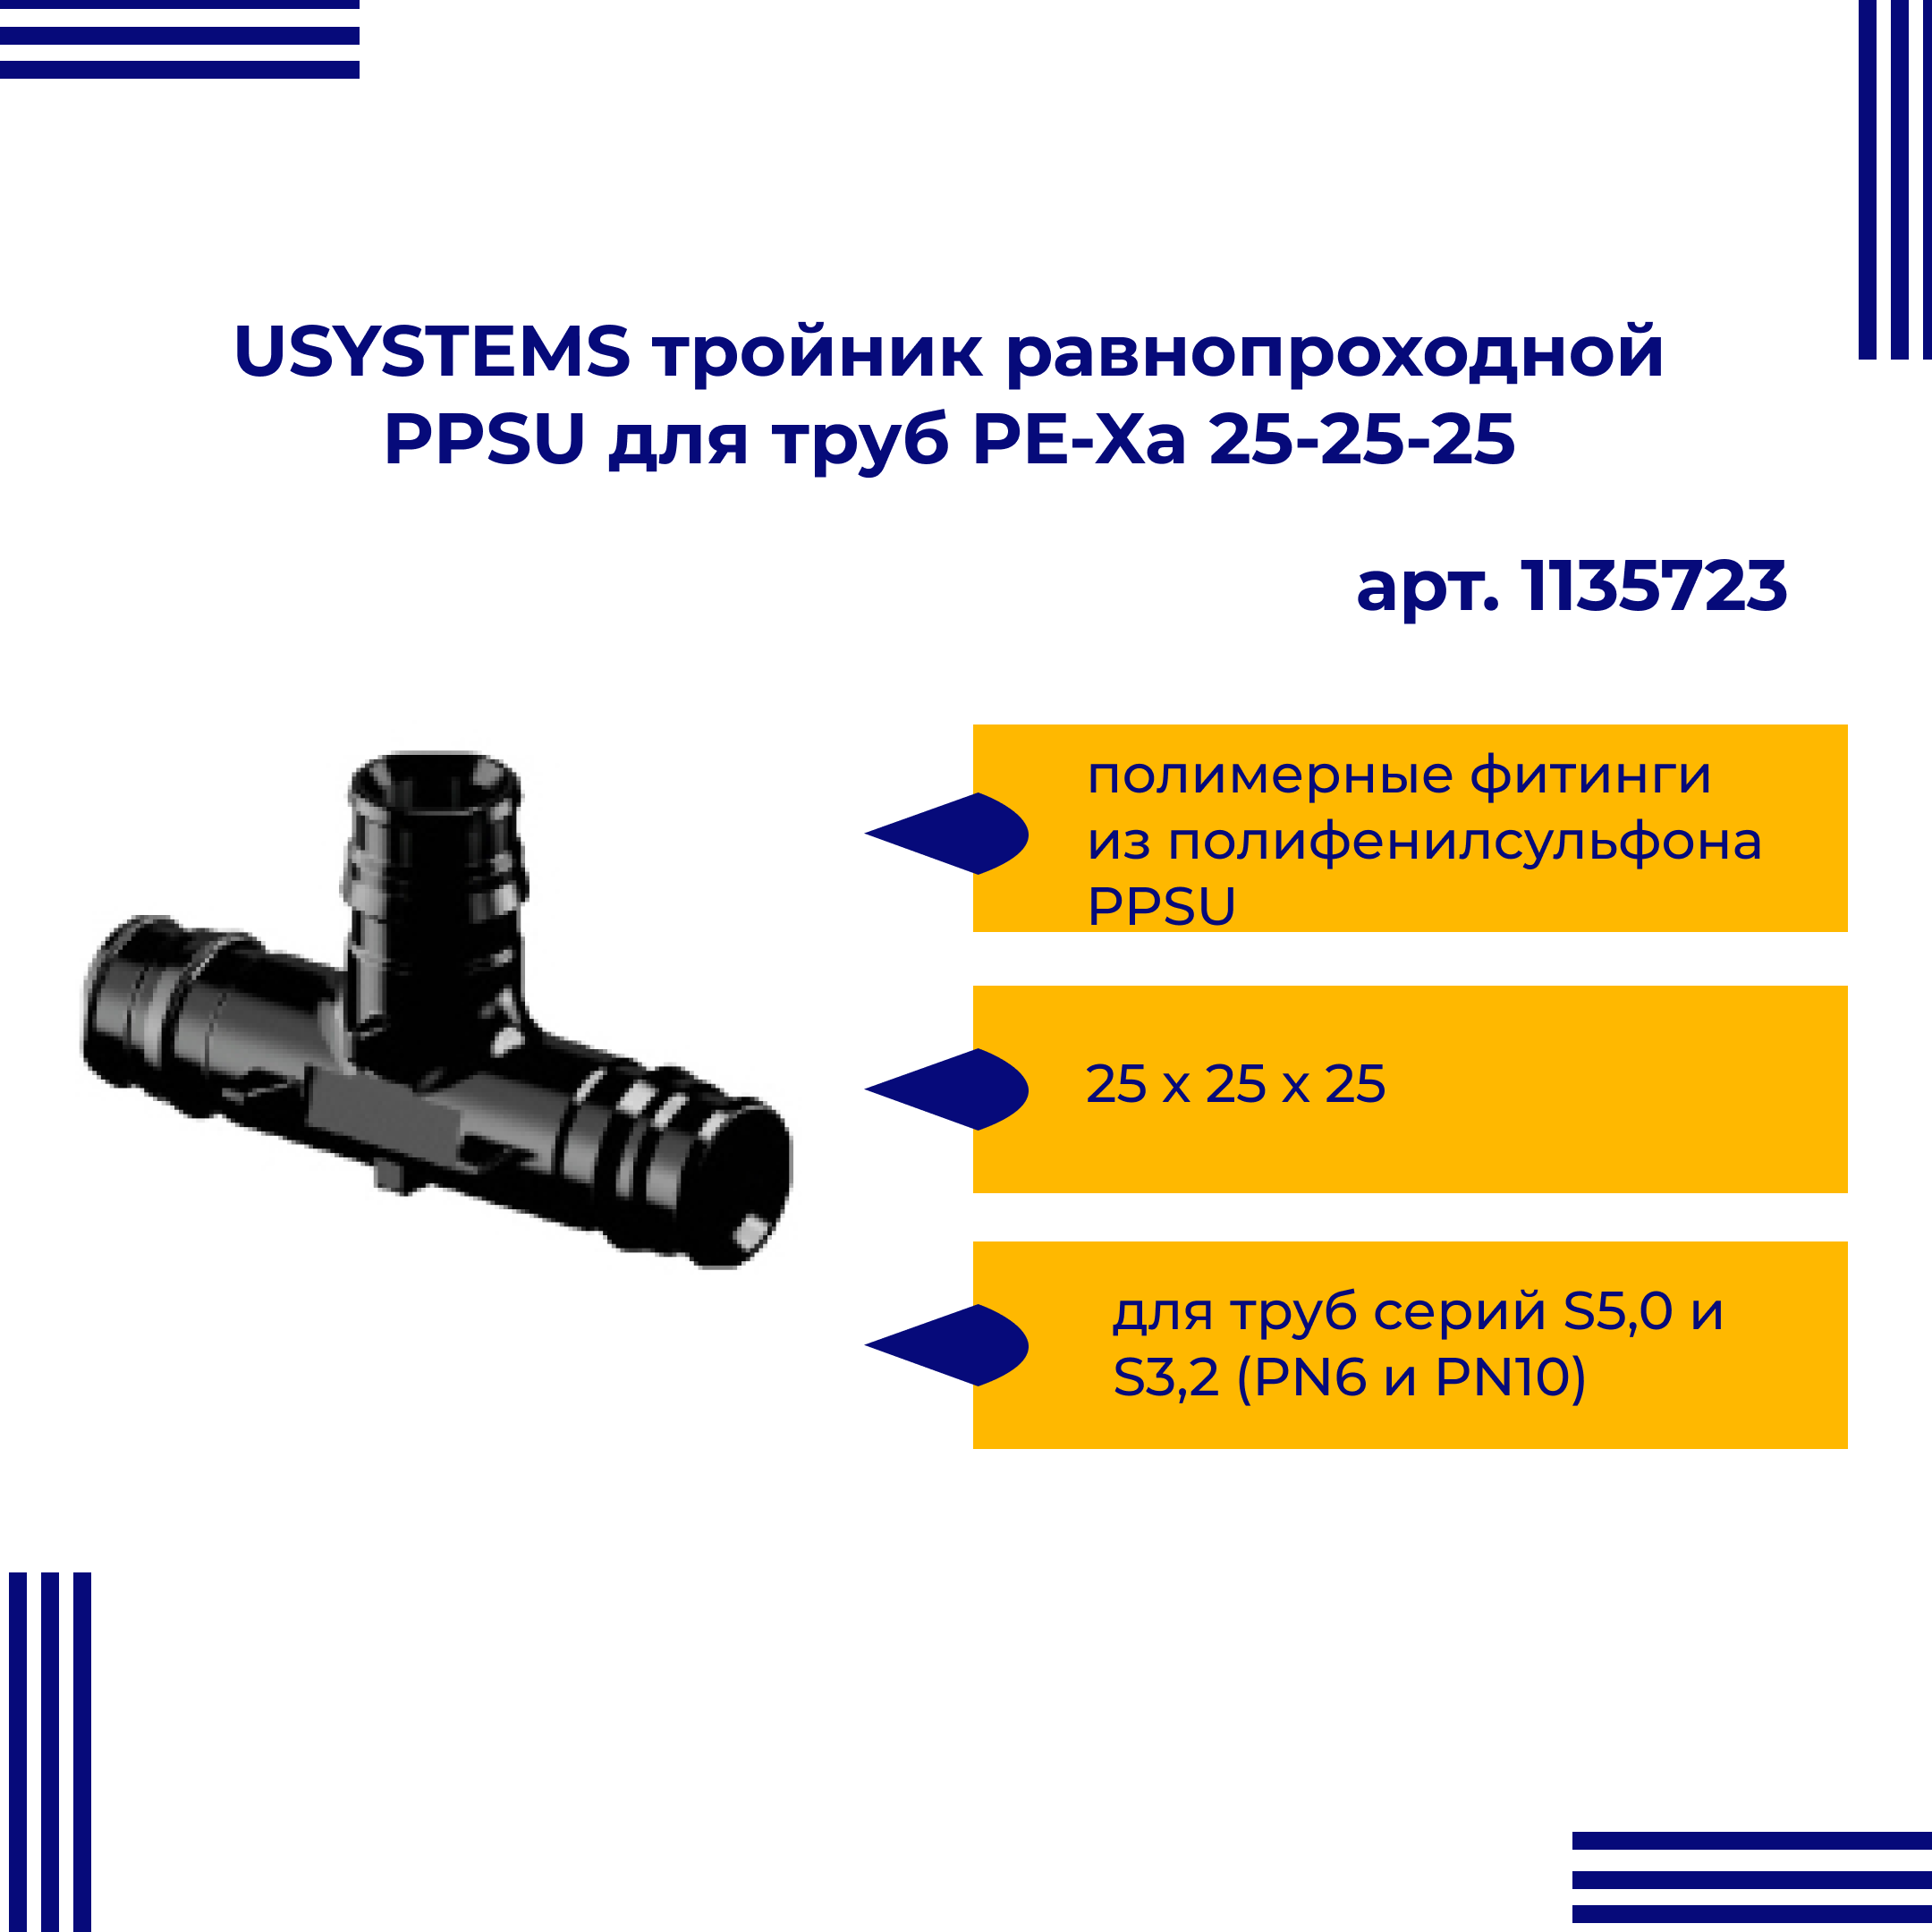 Тройник PPSU USYSTEMS 1135723 равнопроходной для труб PE-Xa 25-25-25 тройник px rehau 11600321001 20 х 20 х 20 мм равнопроходной